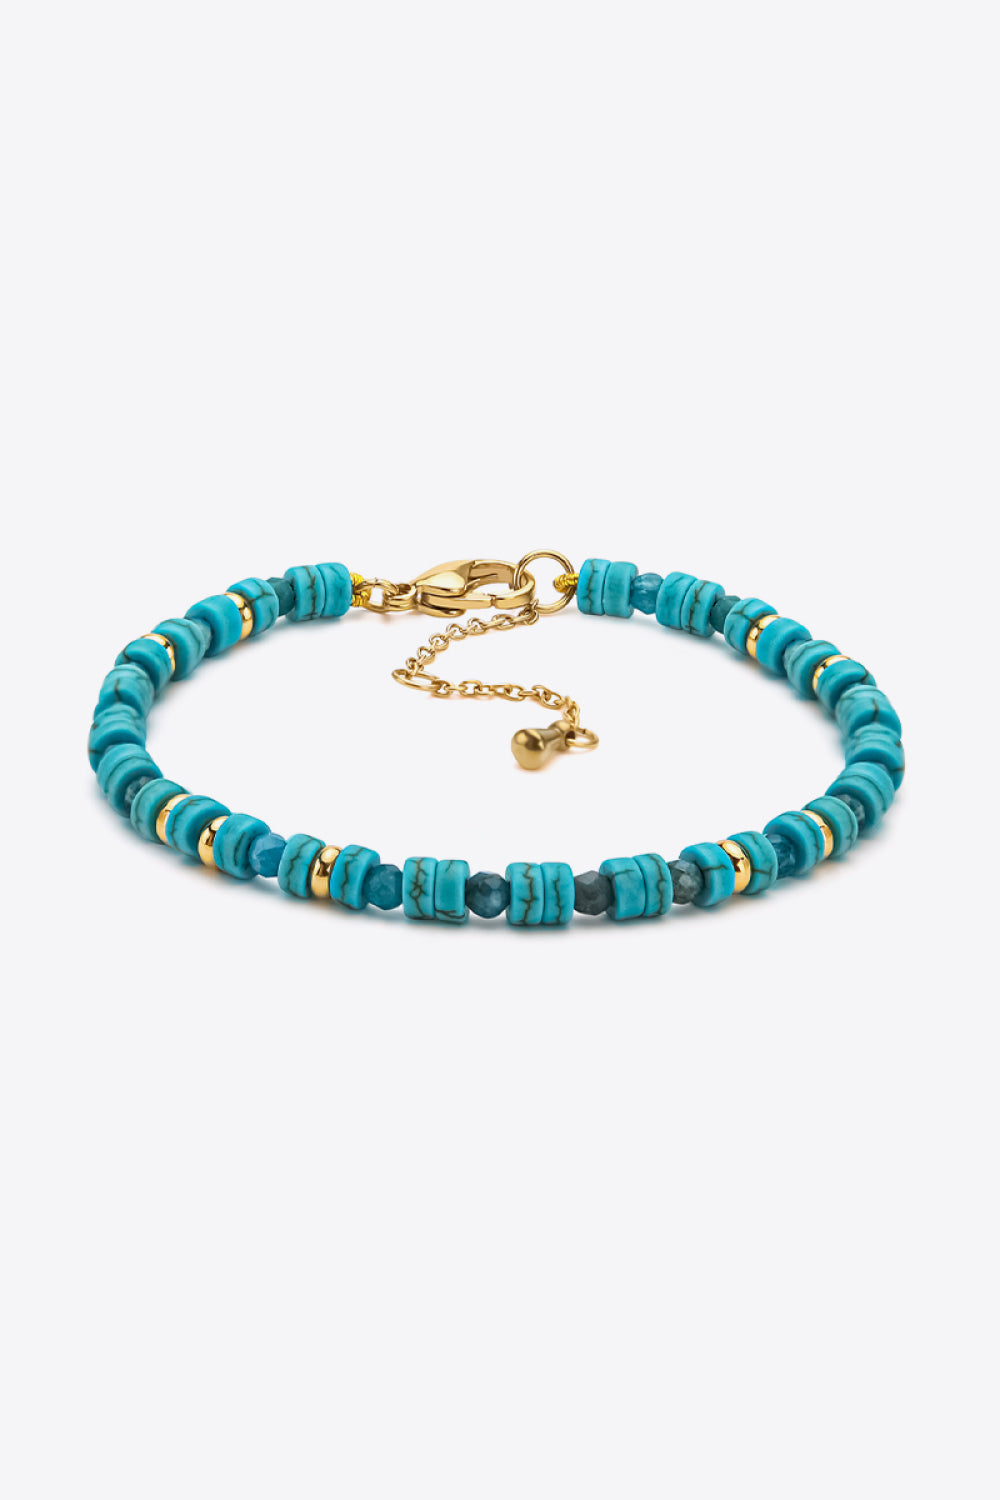 Turquoise Copper Bracelet - Green / One Size - Women’s Jewelry - Bracelets - 1 - 2024